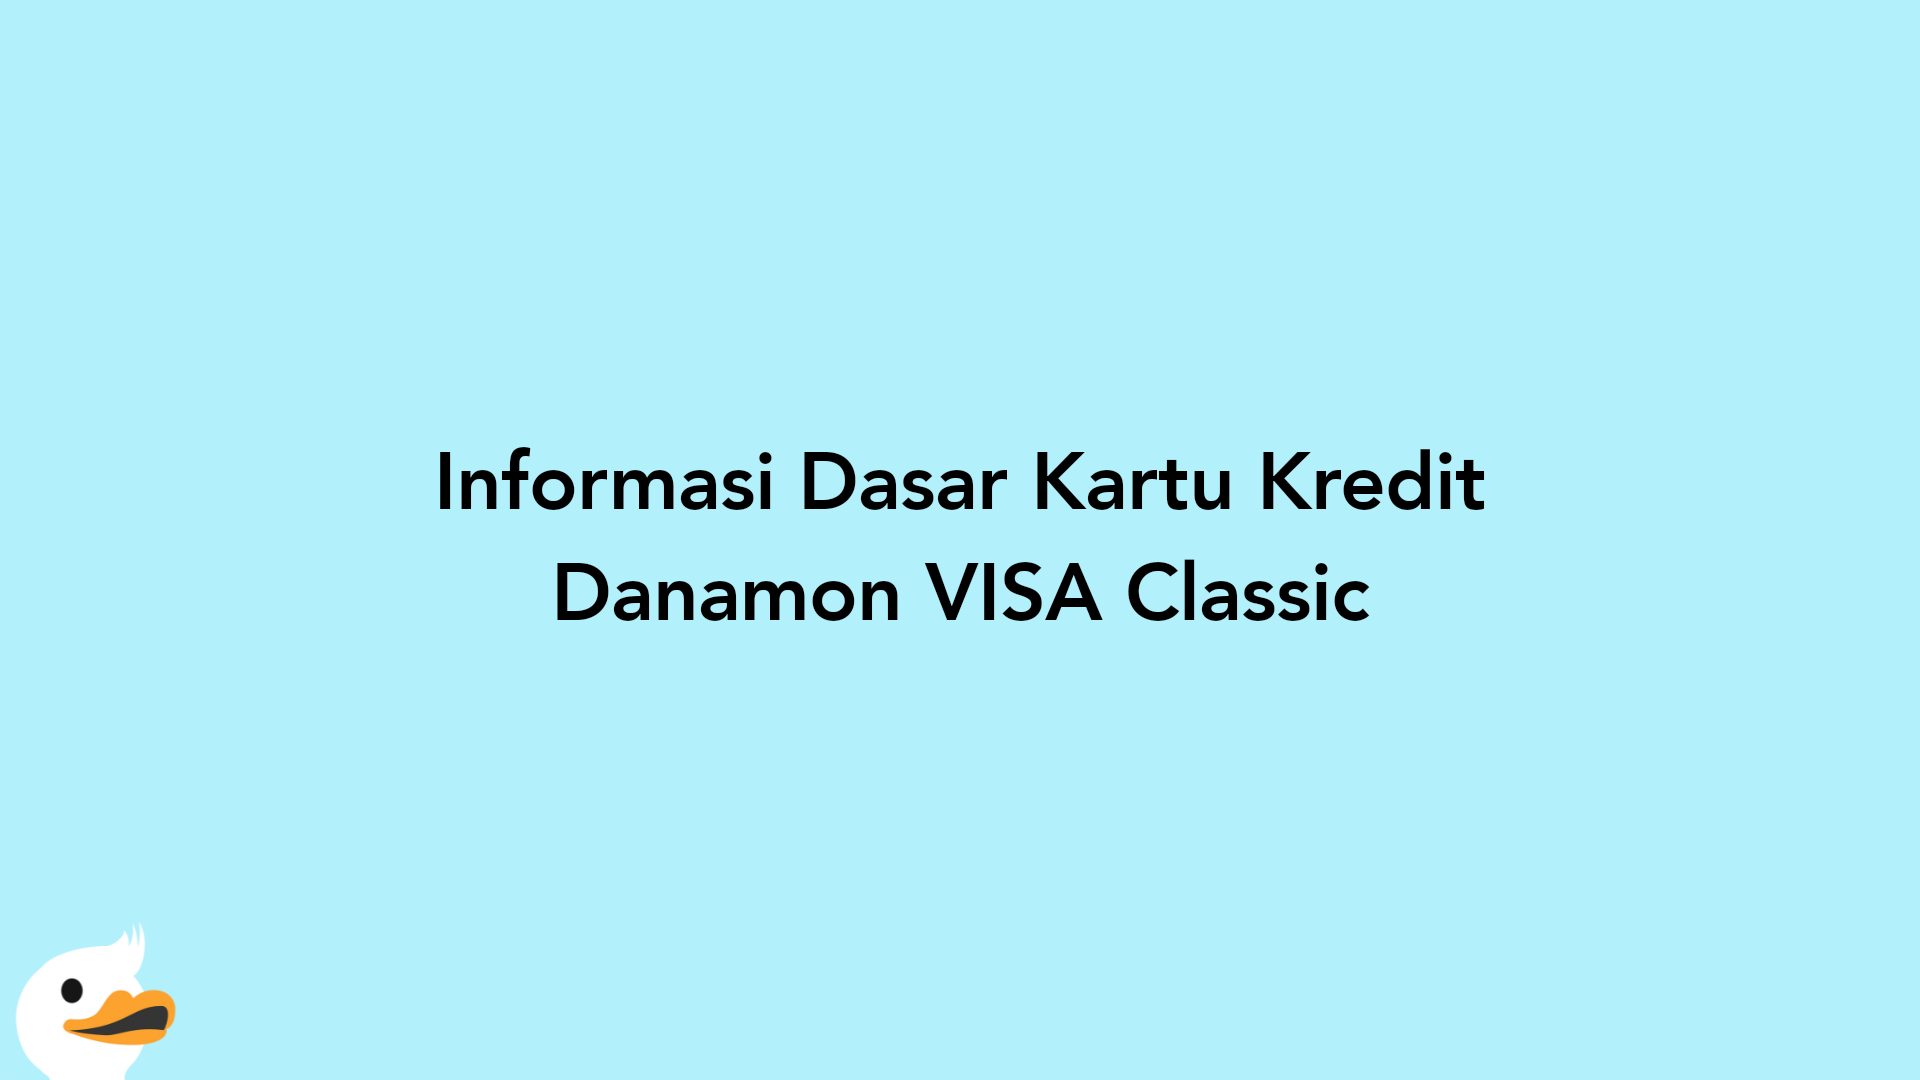 Informasi Dasar Kartu Kredit Danamon VISA Classic